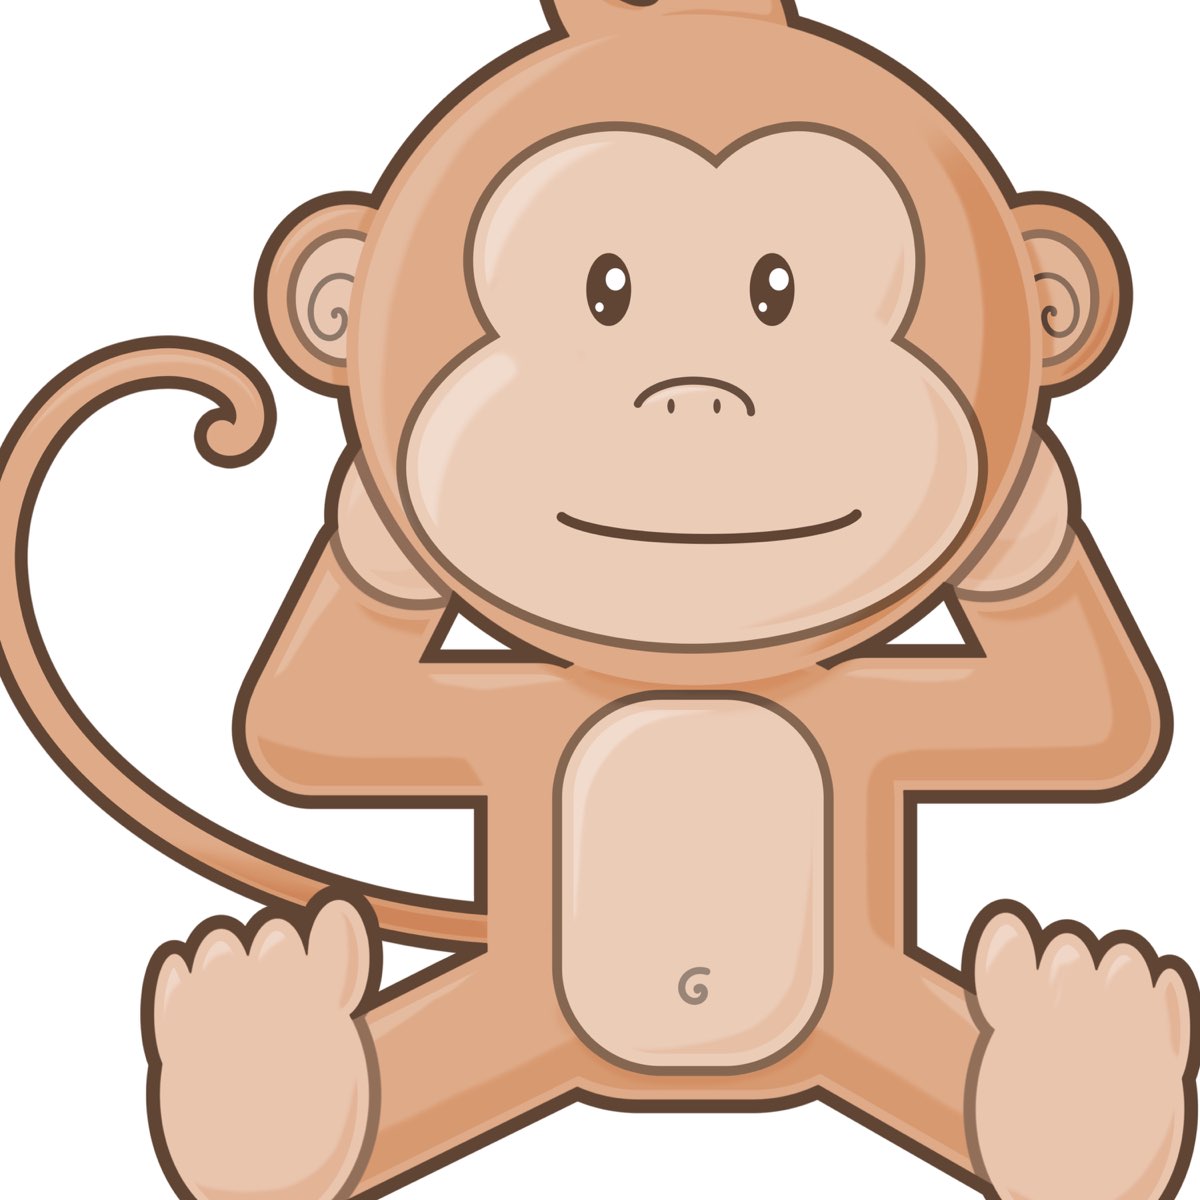 kevin-macleod-monkeys-spinning-monkey